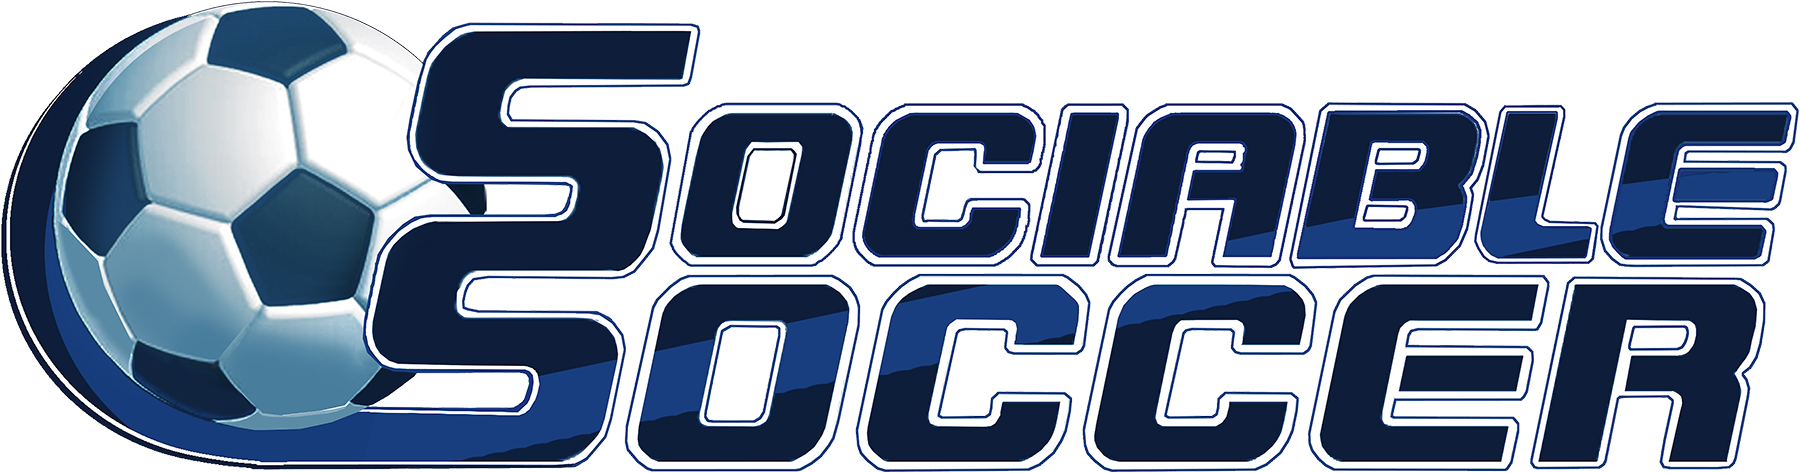 Sociable Soccer Logo